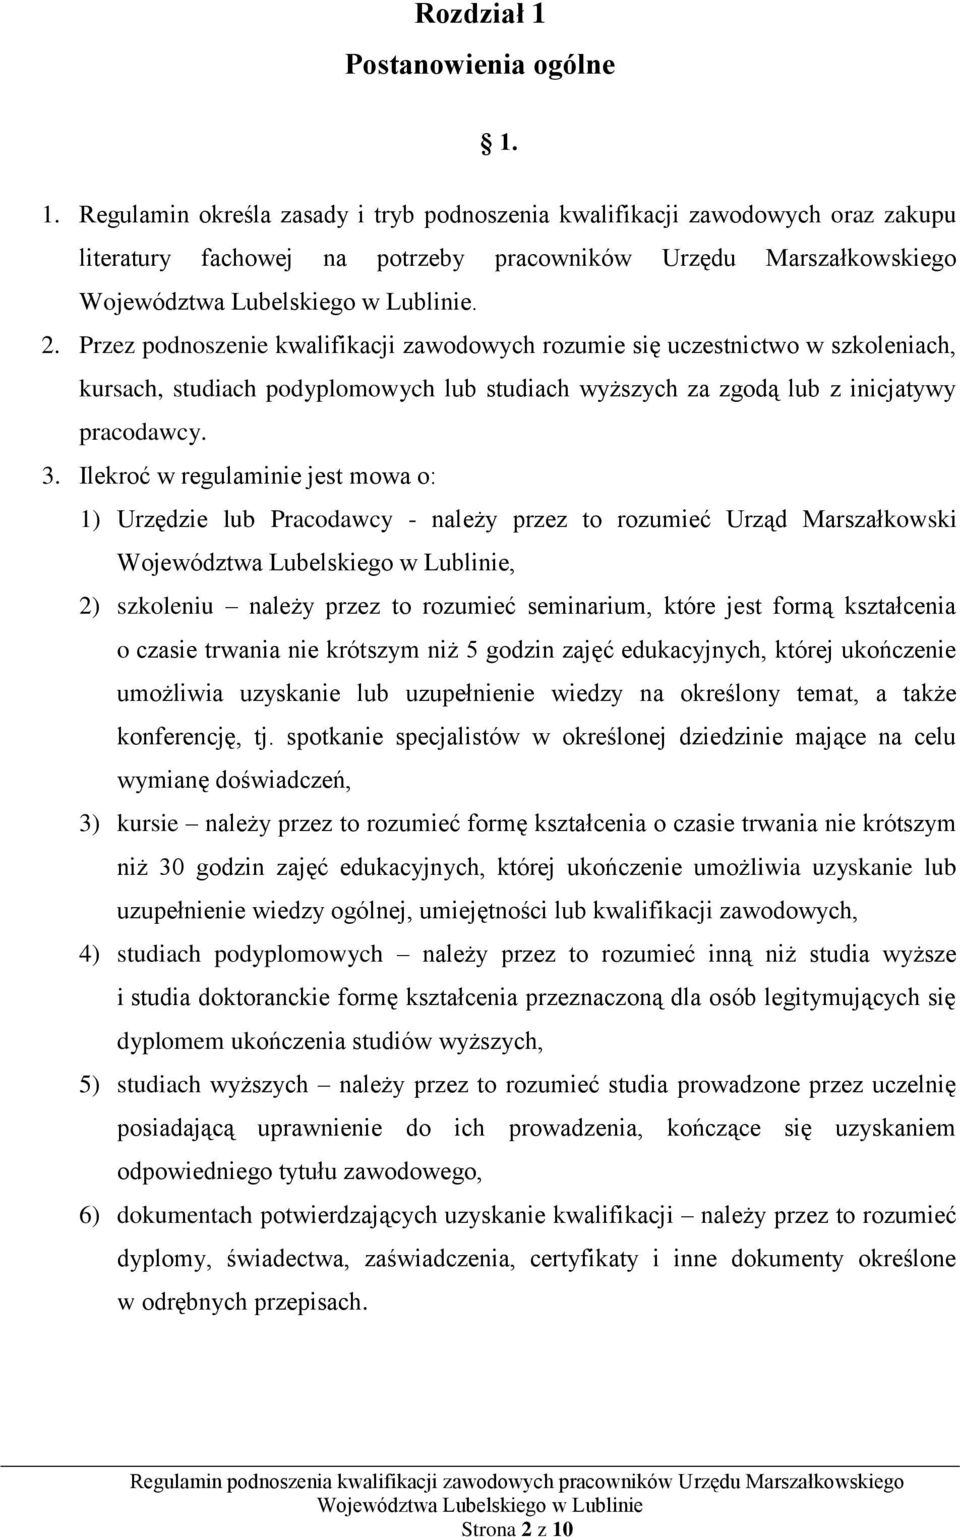 Ilekroć w regulaminie jest mowa o: 1) Urzędzie lub Pracodawcy - należy przez to rozumieć Urząd Marszałkowski, 2) szkoleniu należy przez to rozumieć seminarium, które jest formą kształcenia o czasie